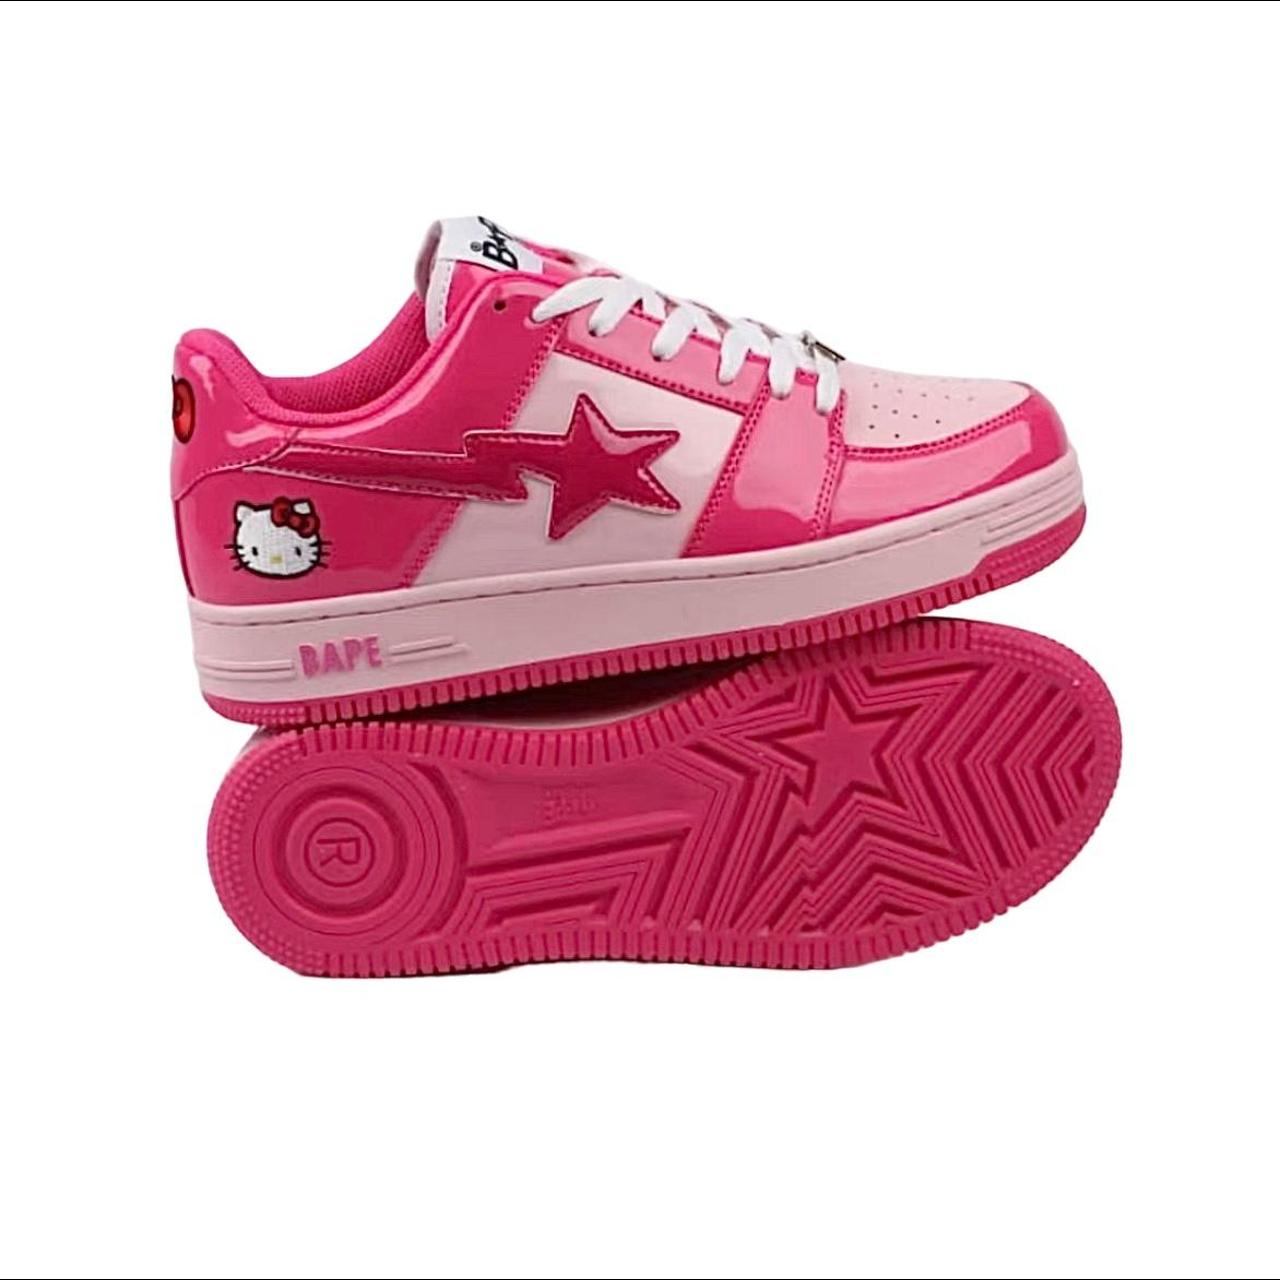 ʕ•̫͡•ʕ•̫͡•ʔ•̫͡•ʔ, 2012 Hello Kitty x Bape Sta Shoes, This